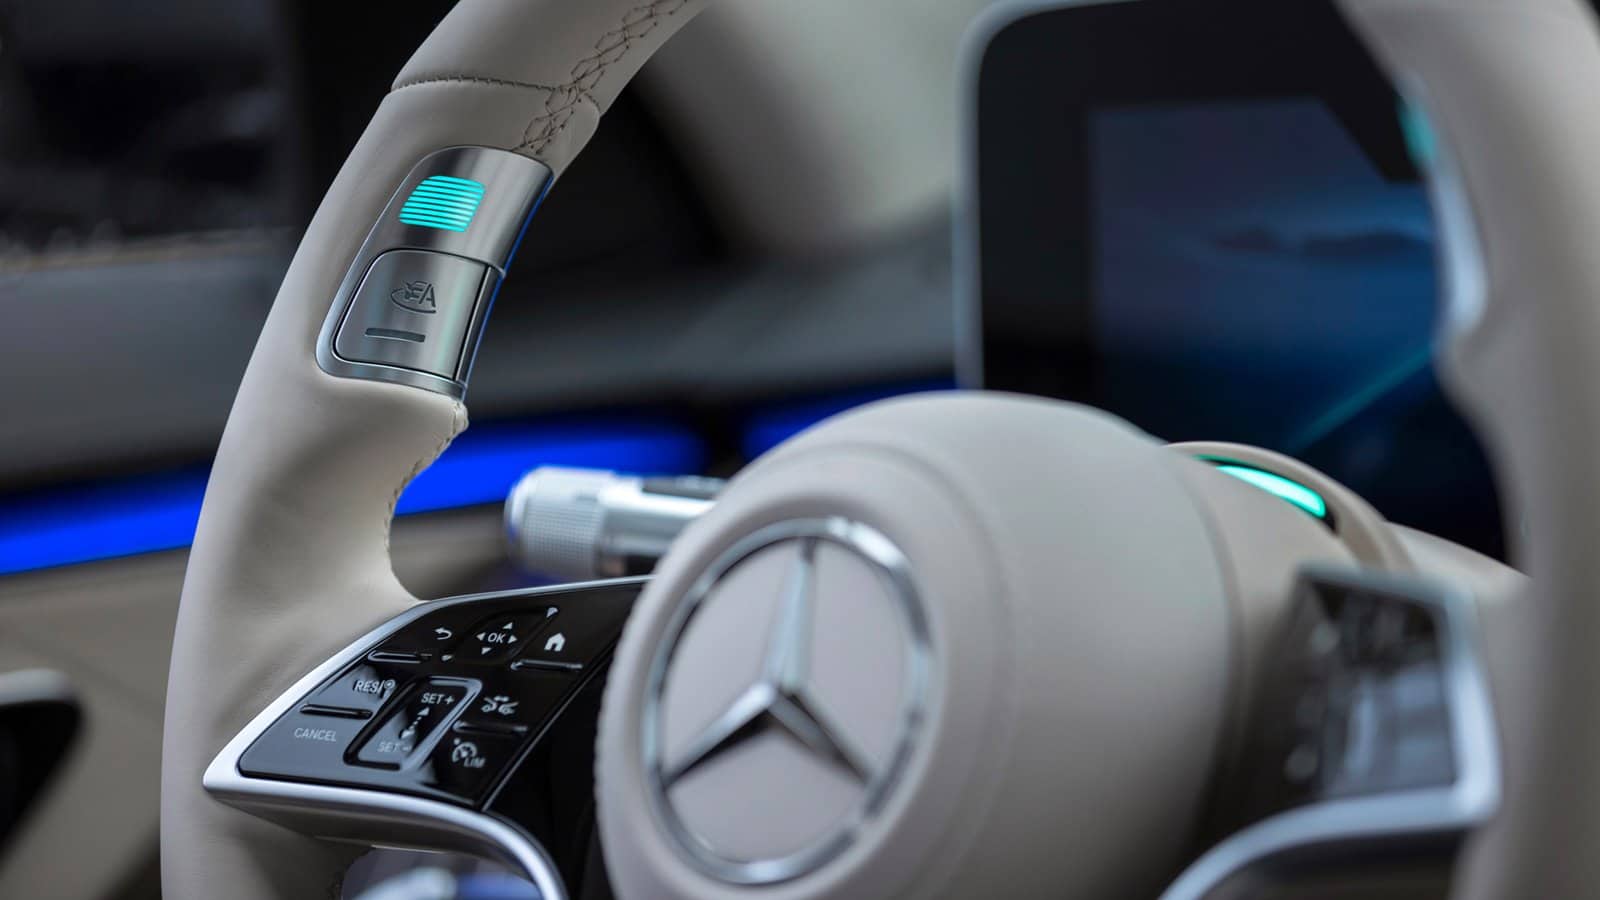 No, Autopilot is not the best autonomous driving system